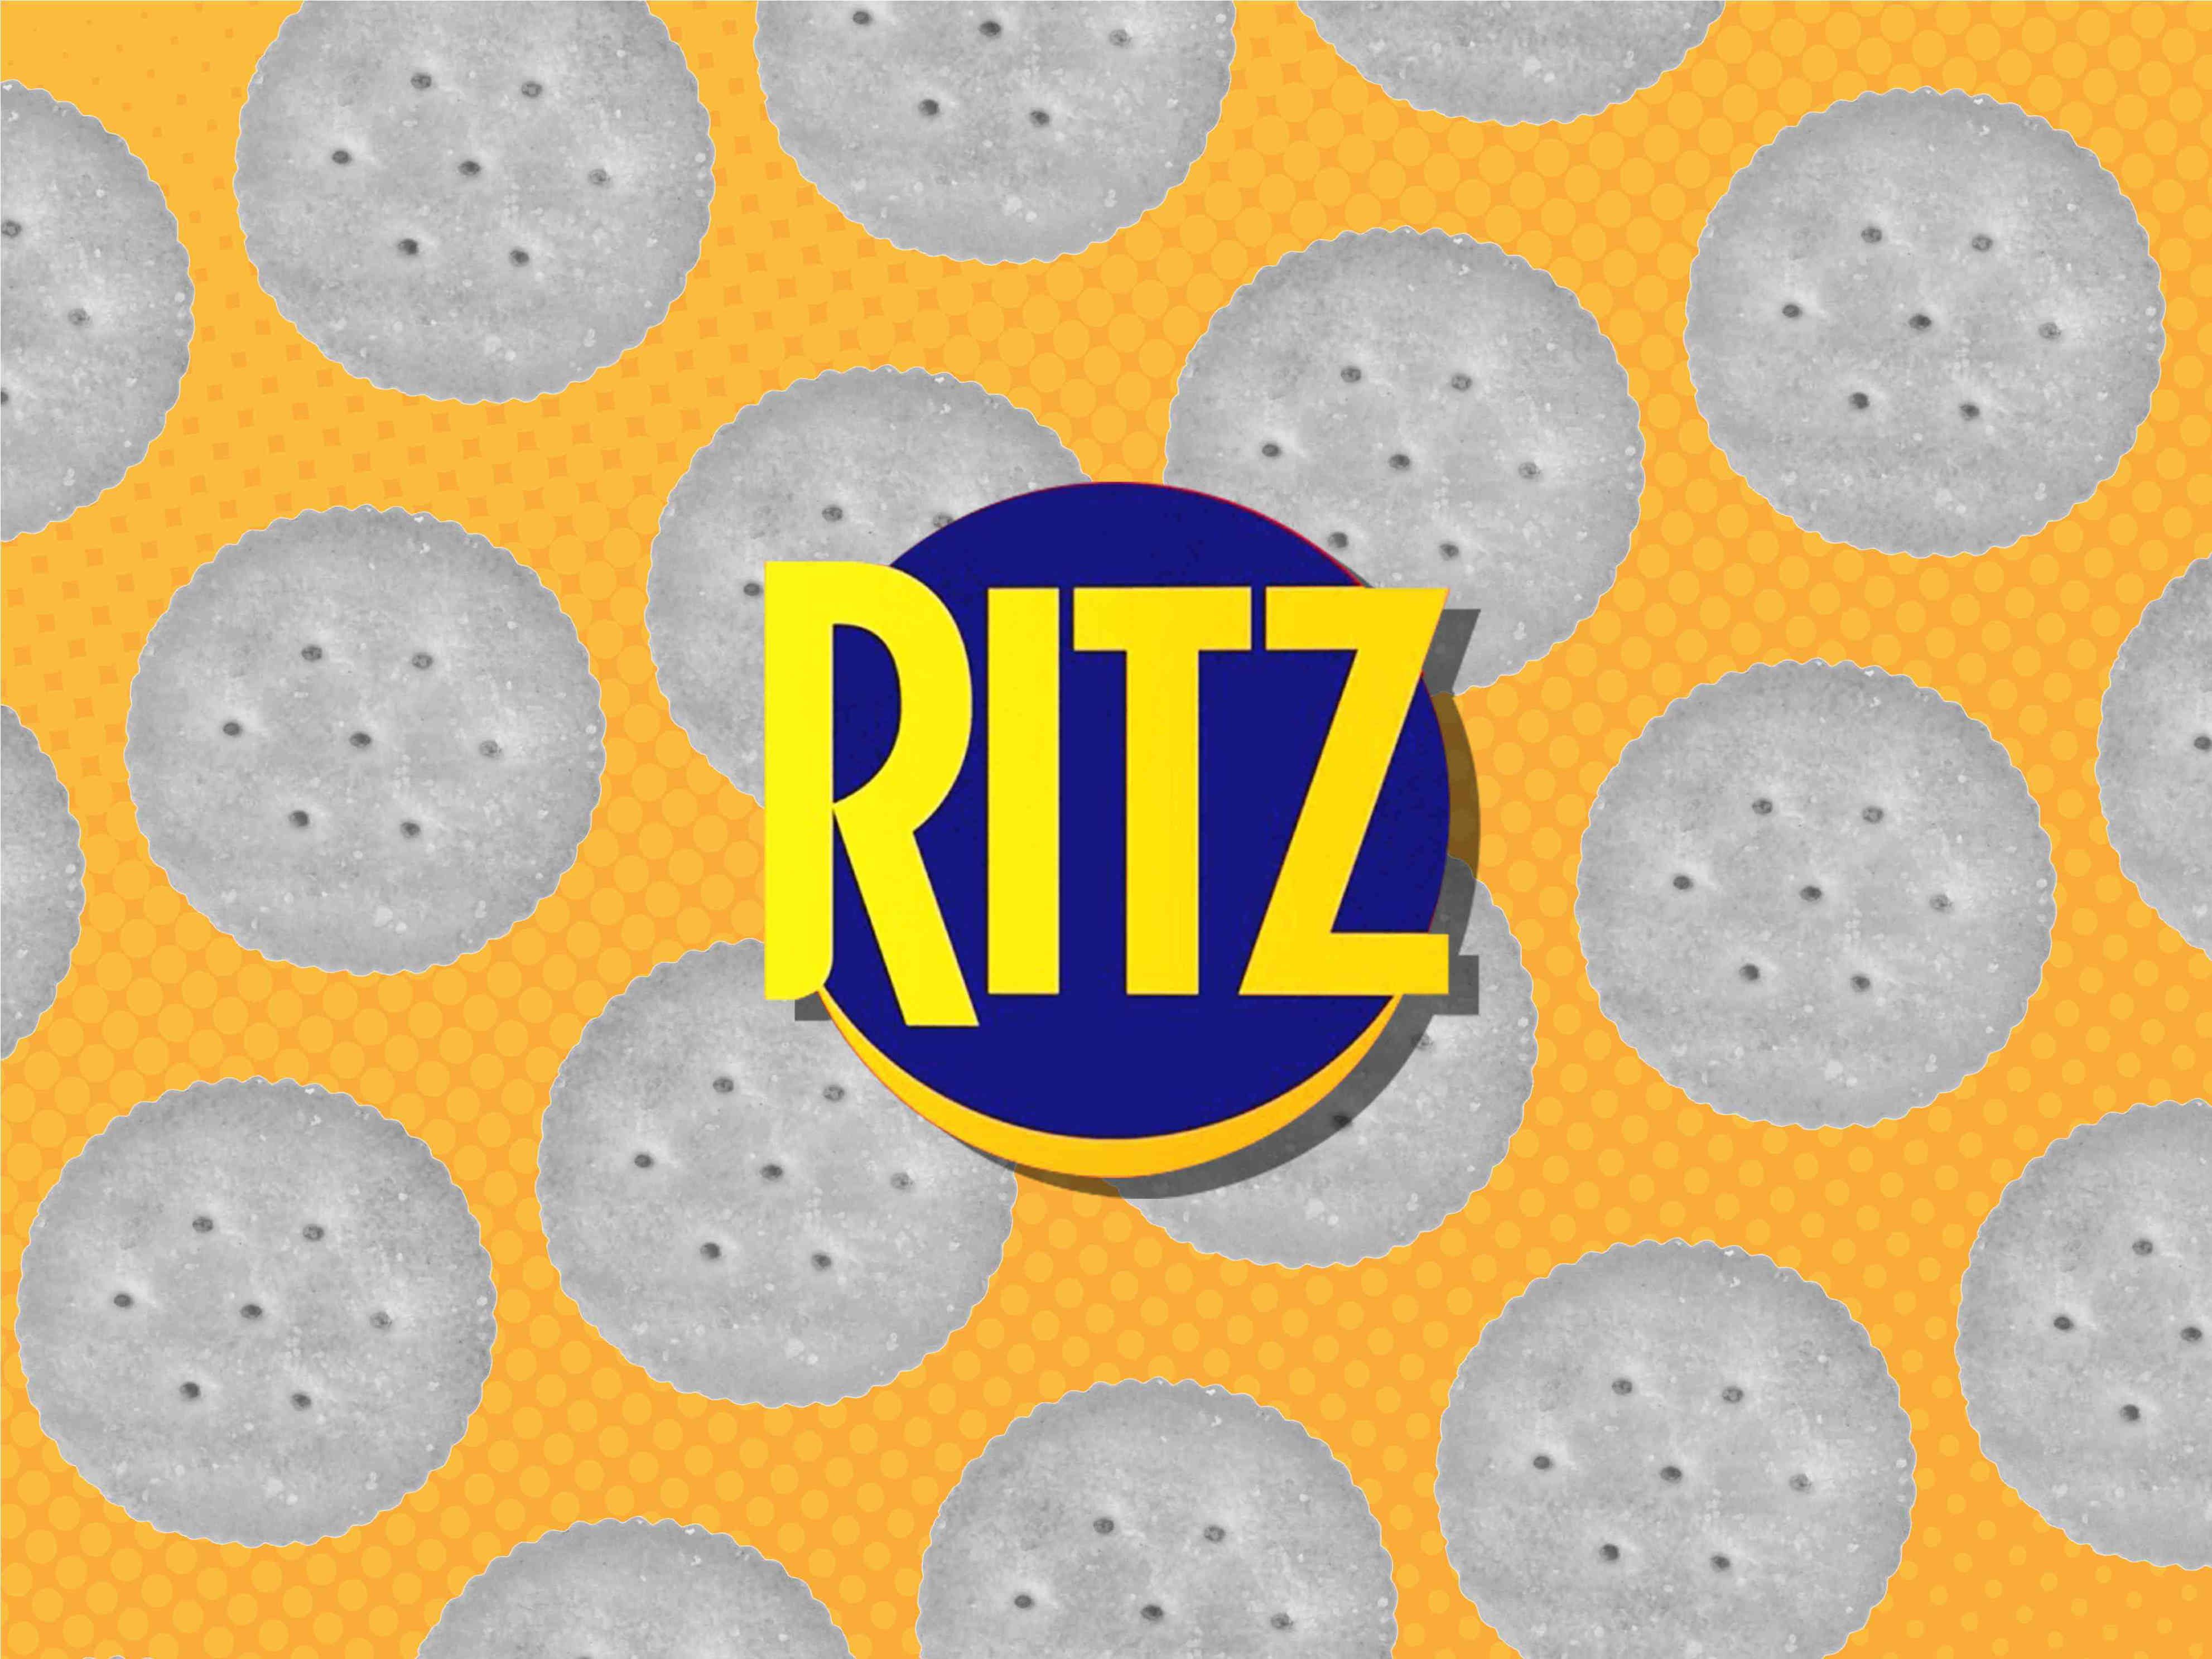 ritz is launching the ritziest ritz cracker ever